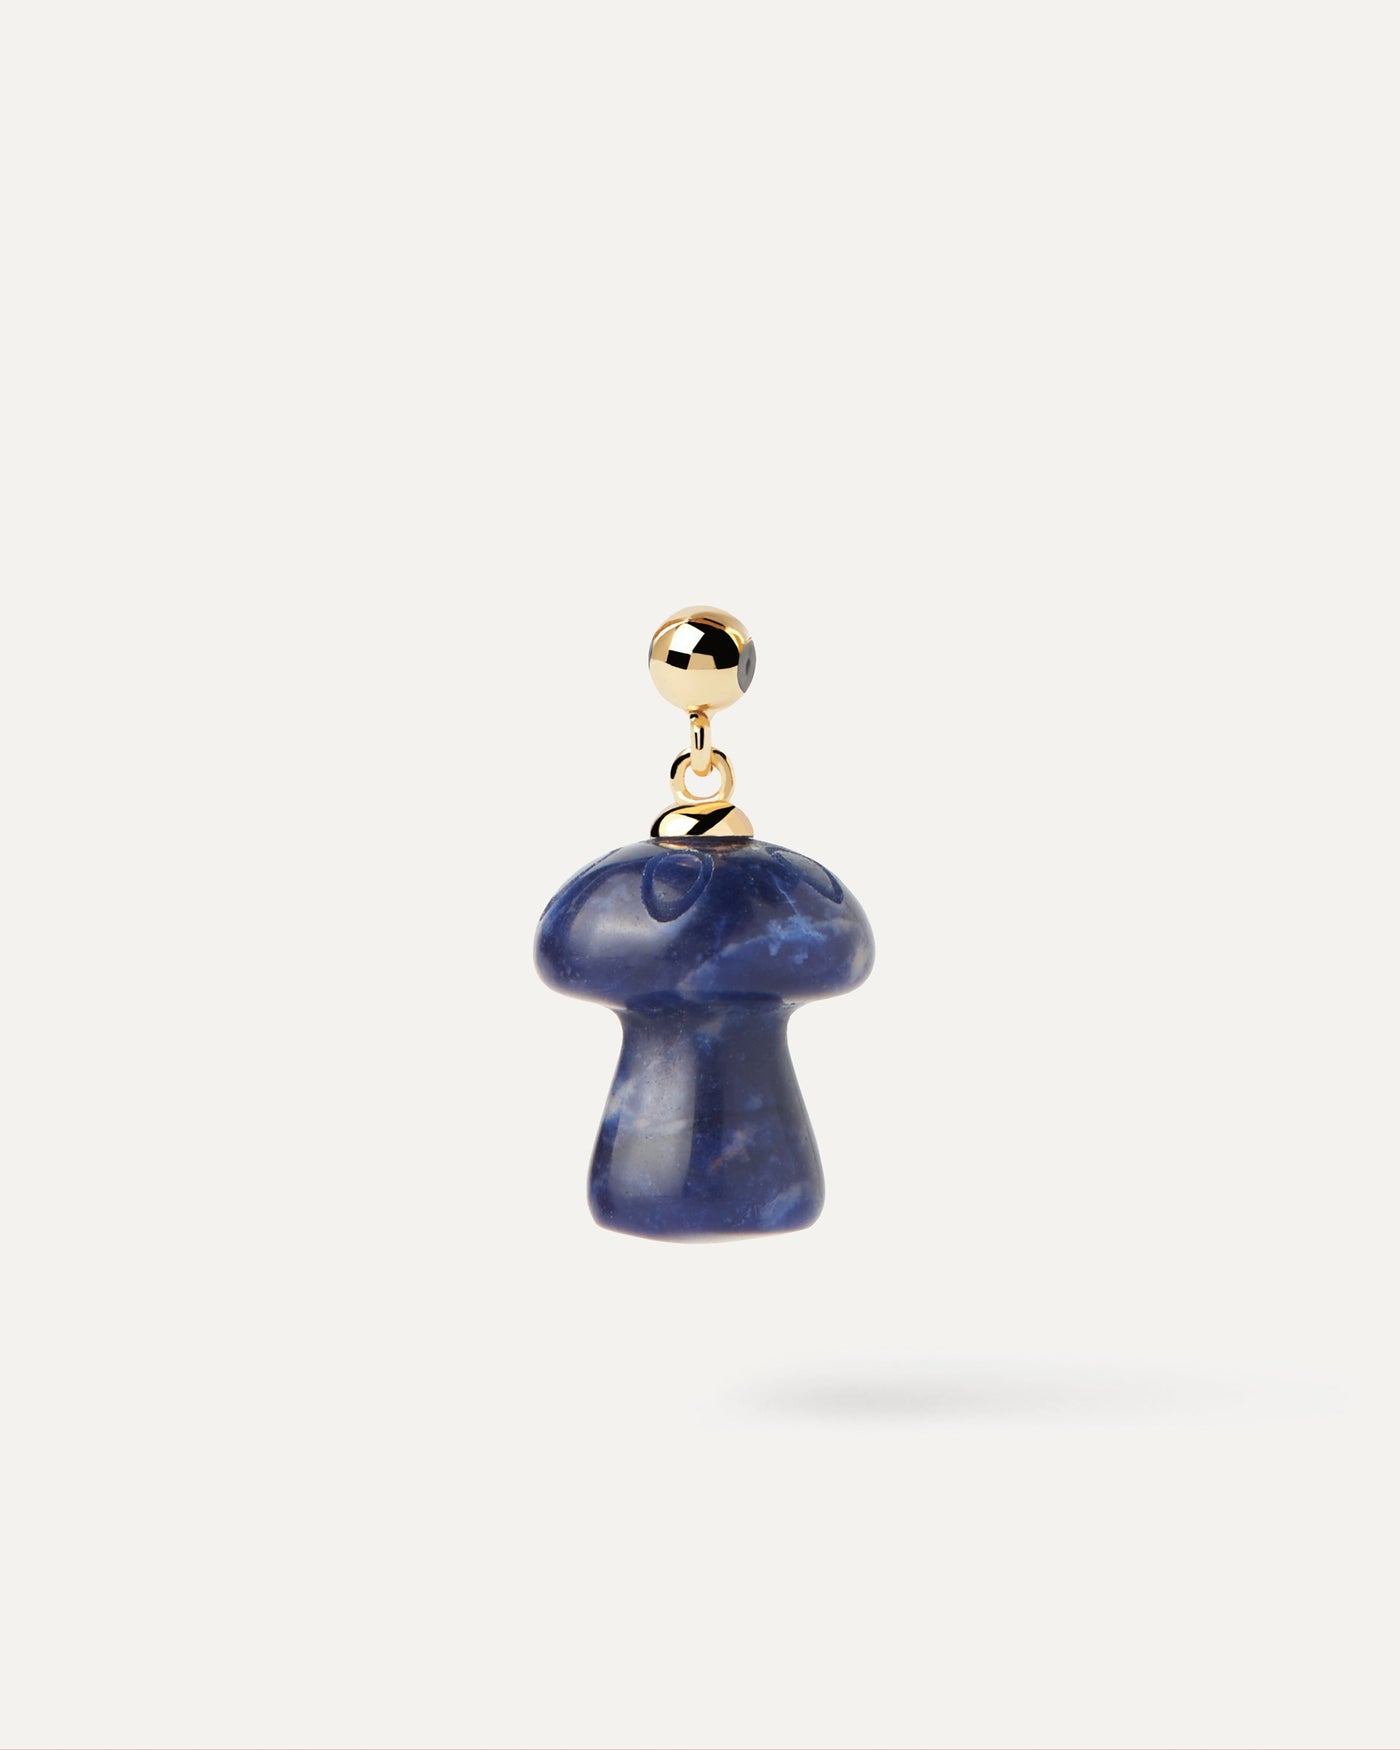 Charm Champignon Sodalite. Charm champignon de pierre bleu foncé pour collier ou bracelet. Découvrez les dernières nouveautés de chez PDPAOLA. Commandez et recevez votre bijou en toute sérénité.